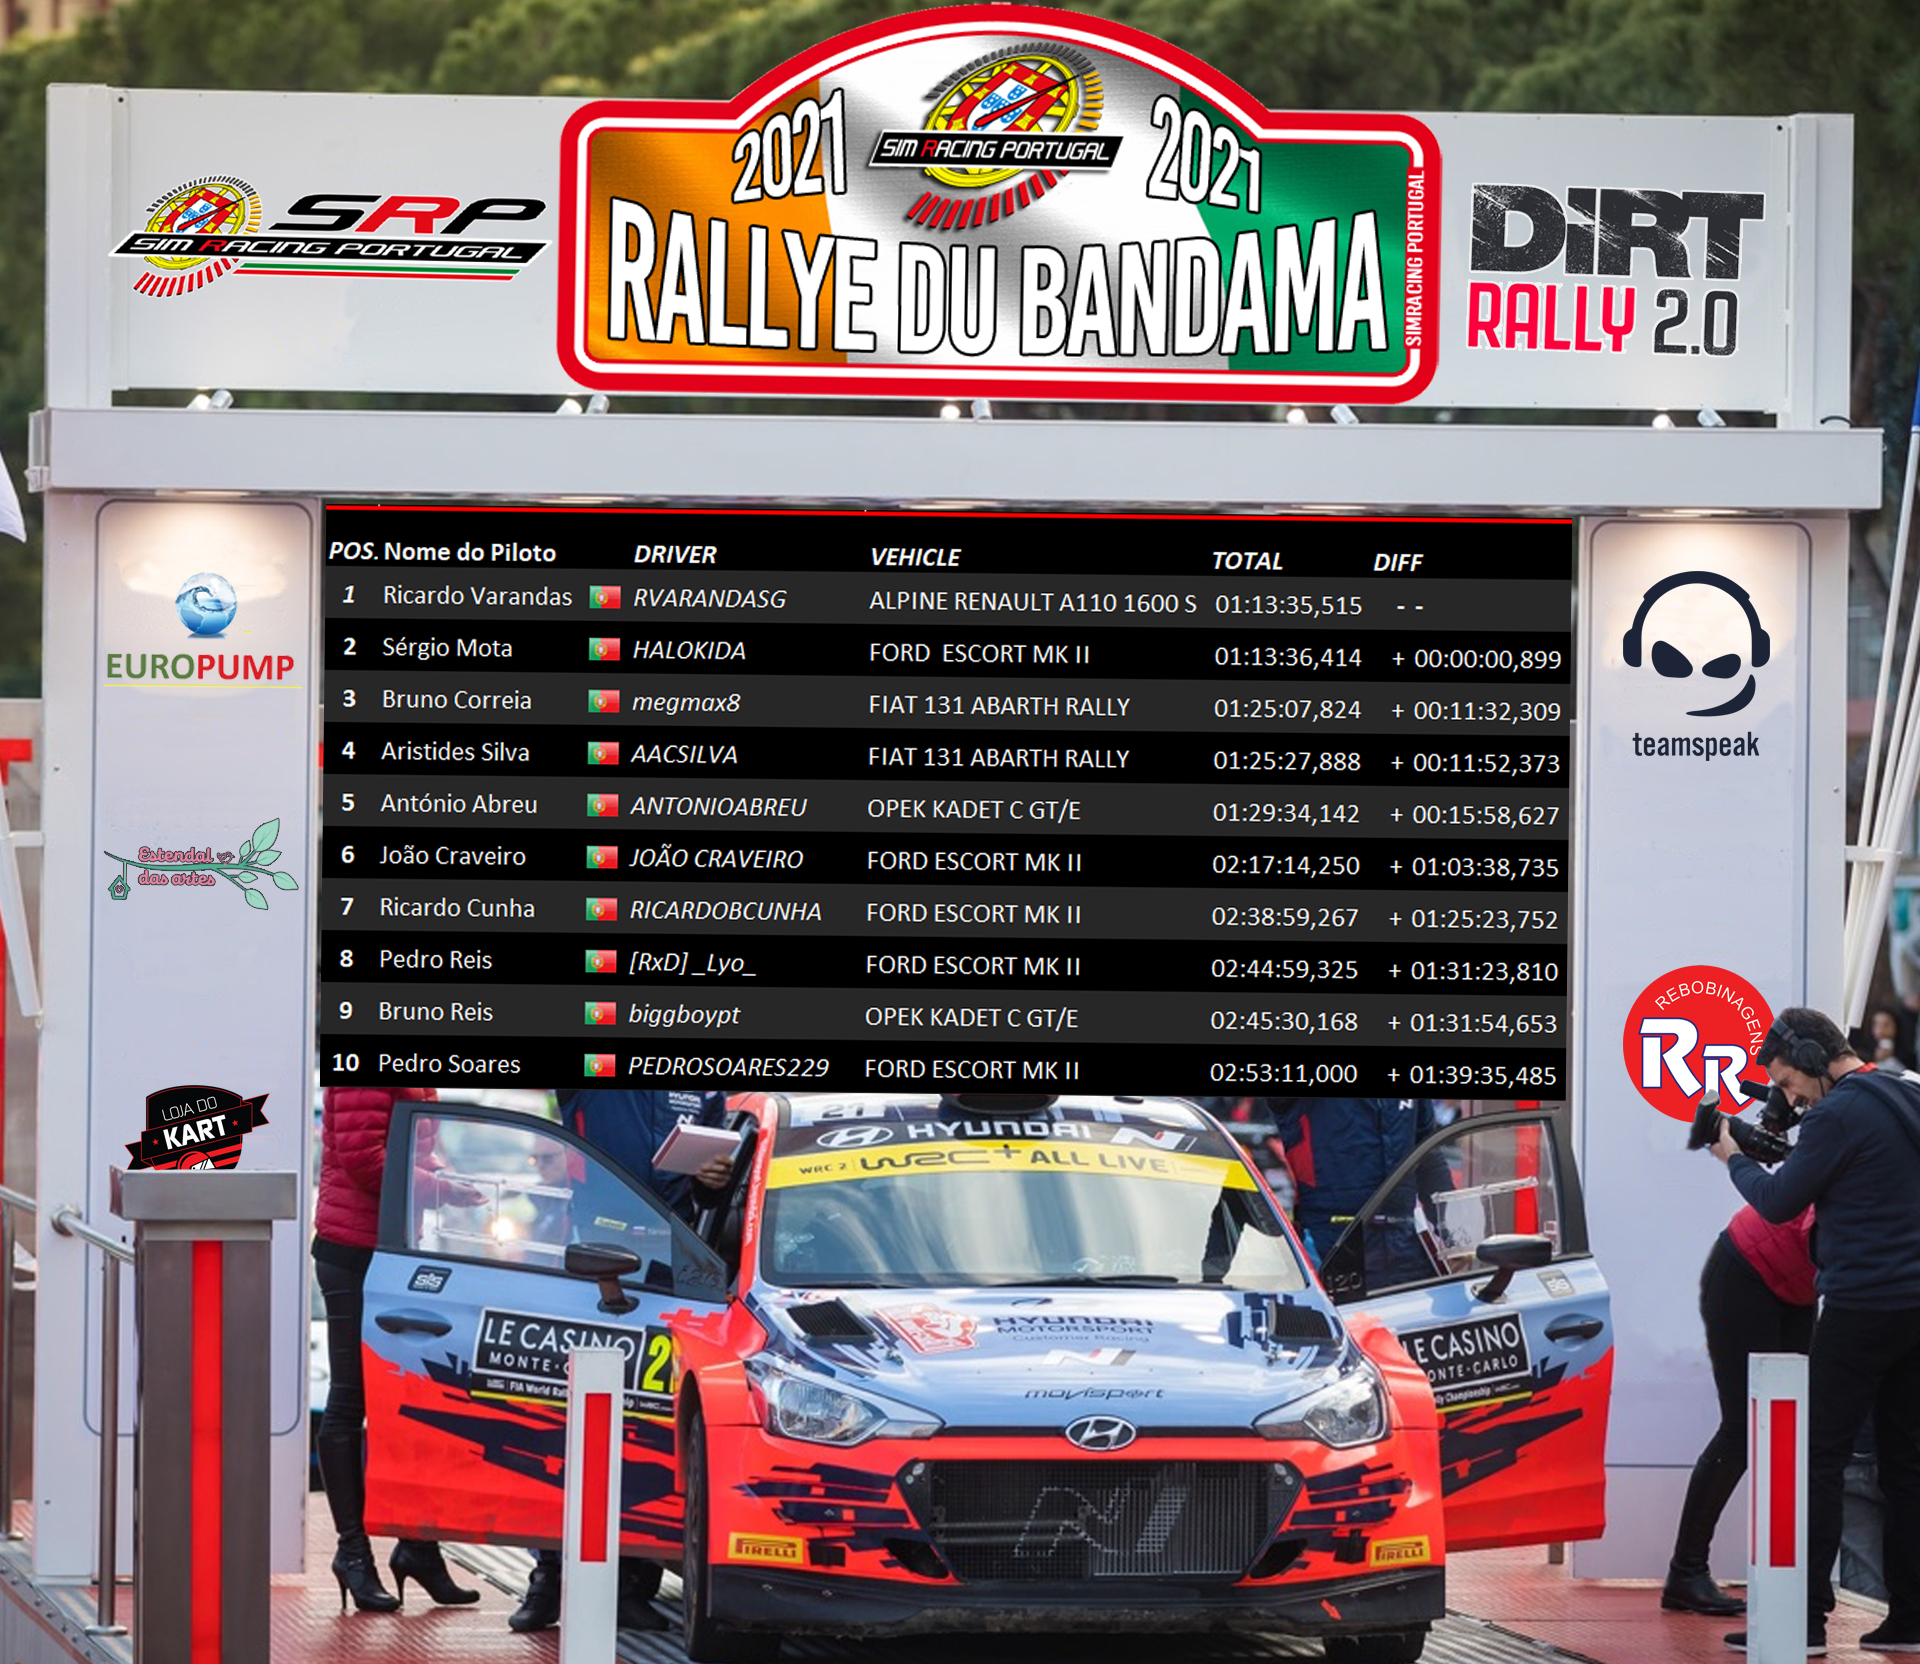 [Image: RaceResults2021_rallye.jpg]